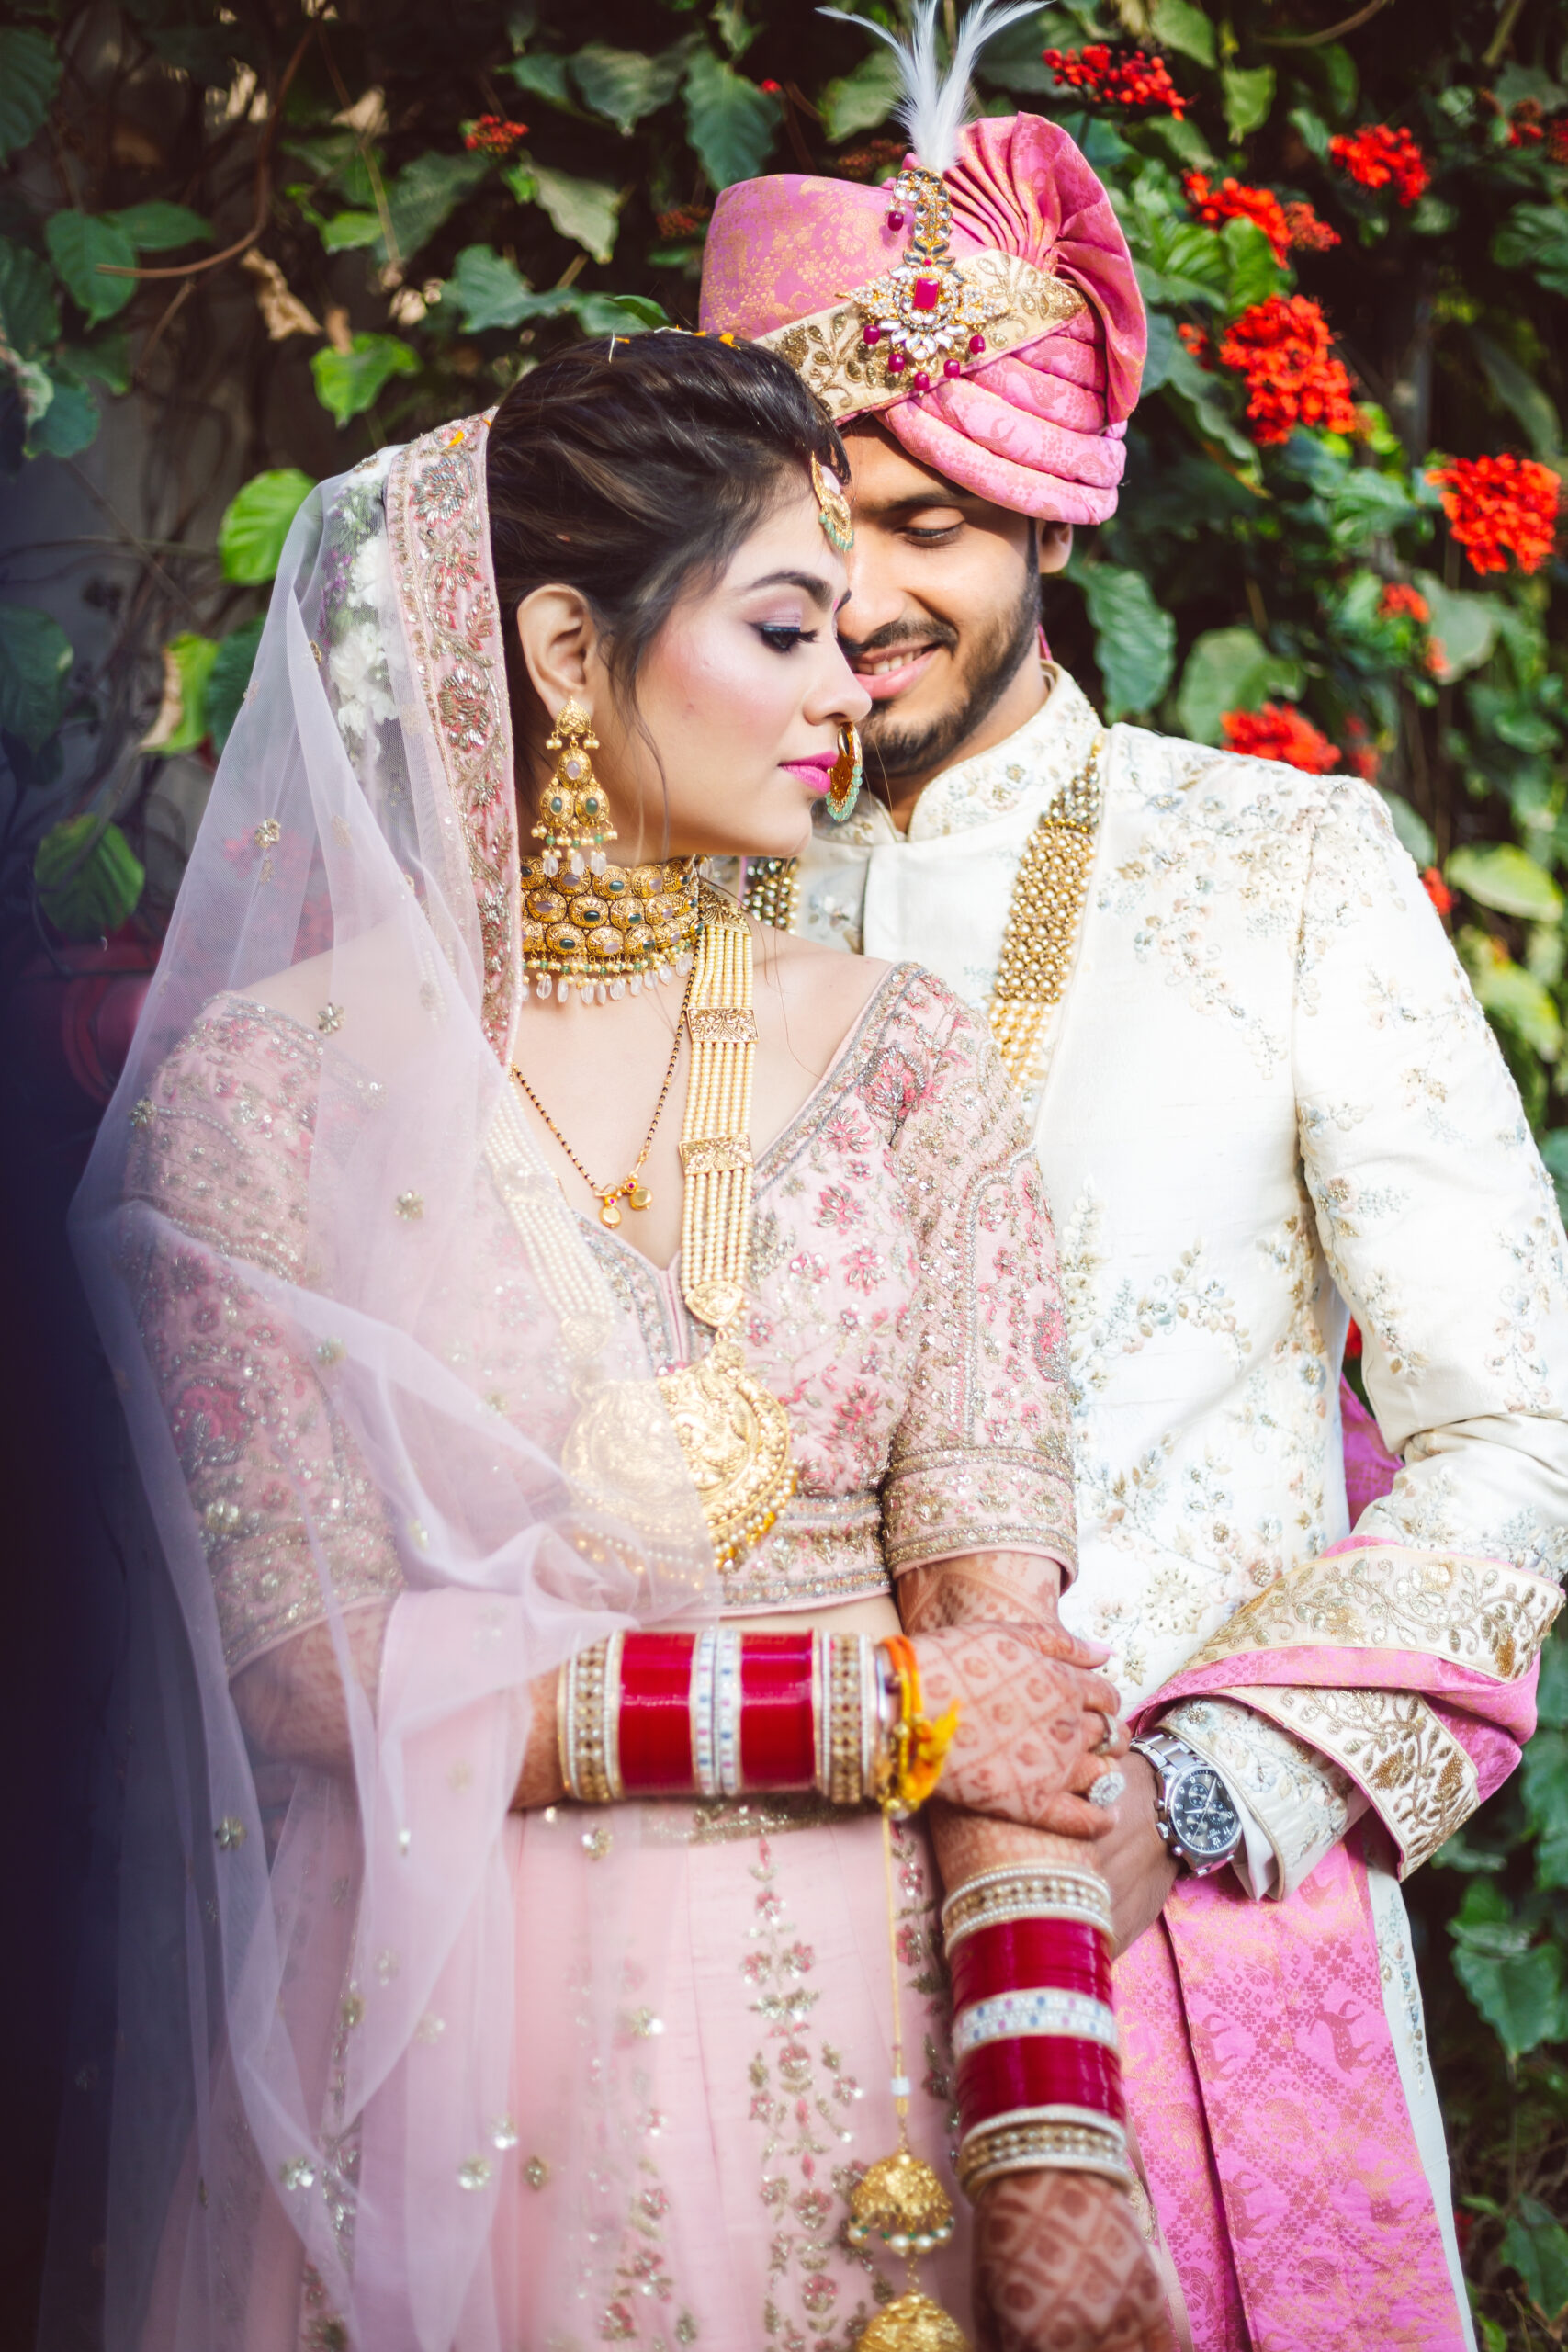 Indian Wedding Photoshoot Poses Ideas - YouTube